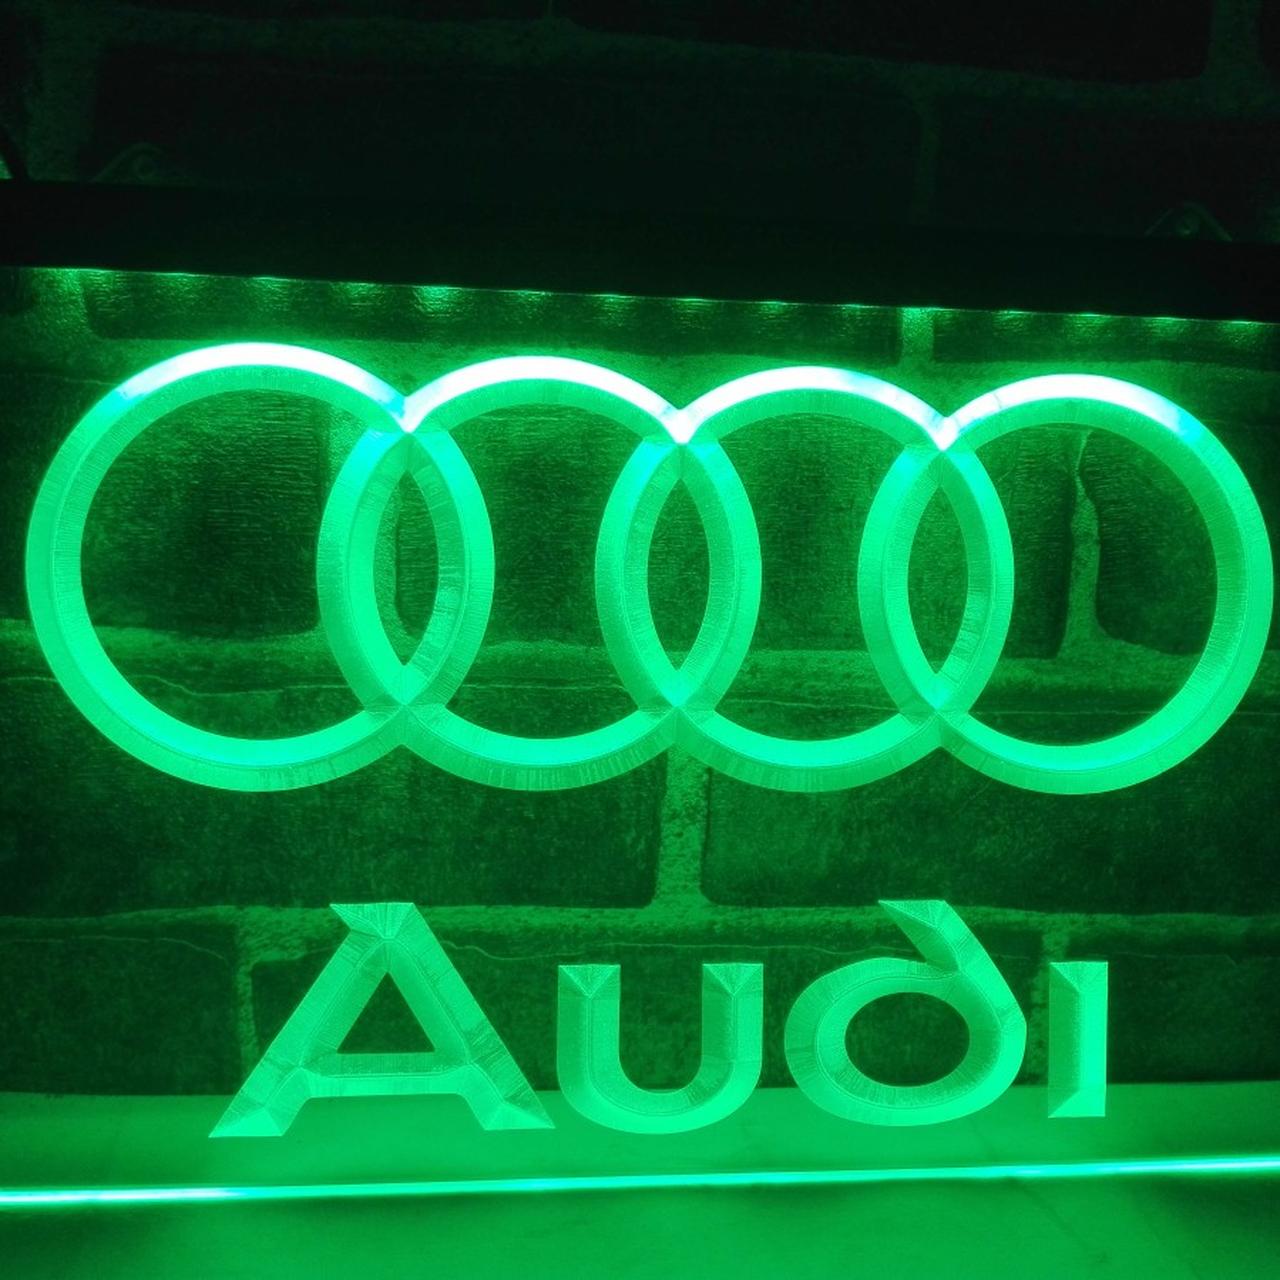 White Animated Startup Dynamic LED Audi Rings Emblem Logo Badge (273mm)